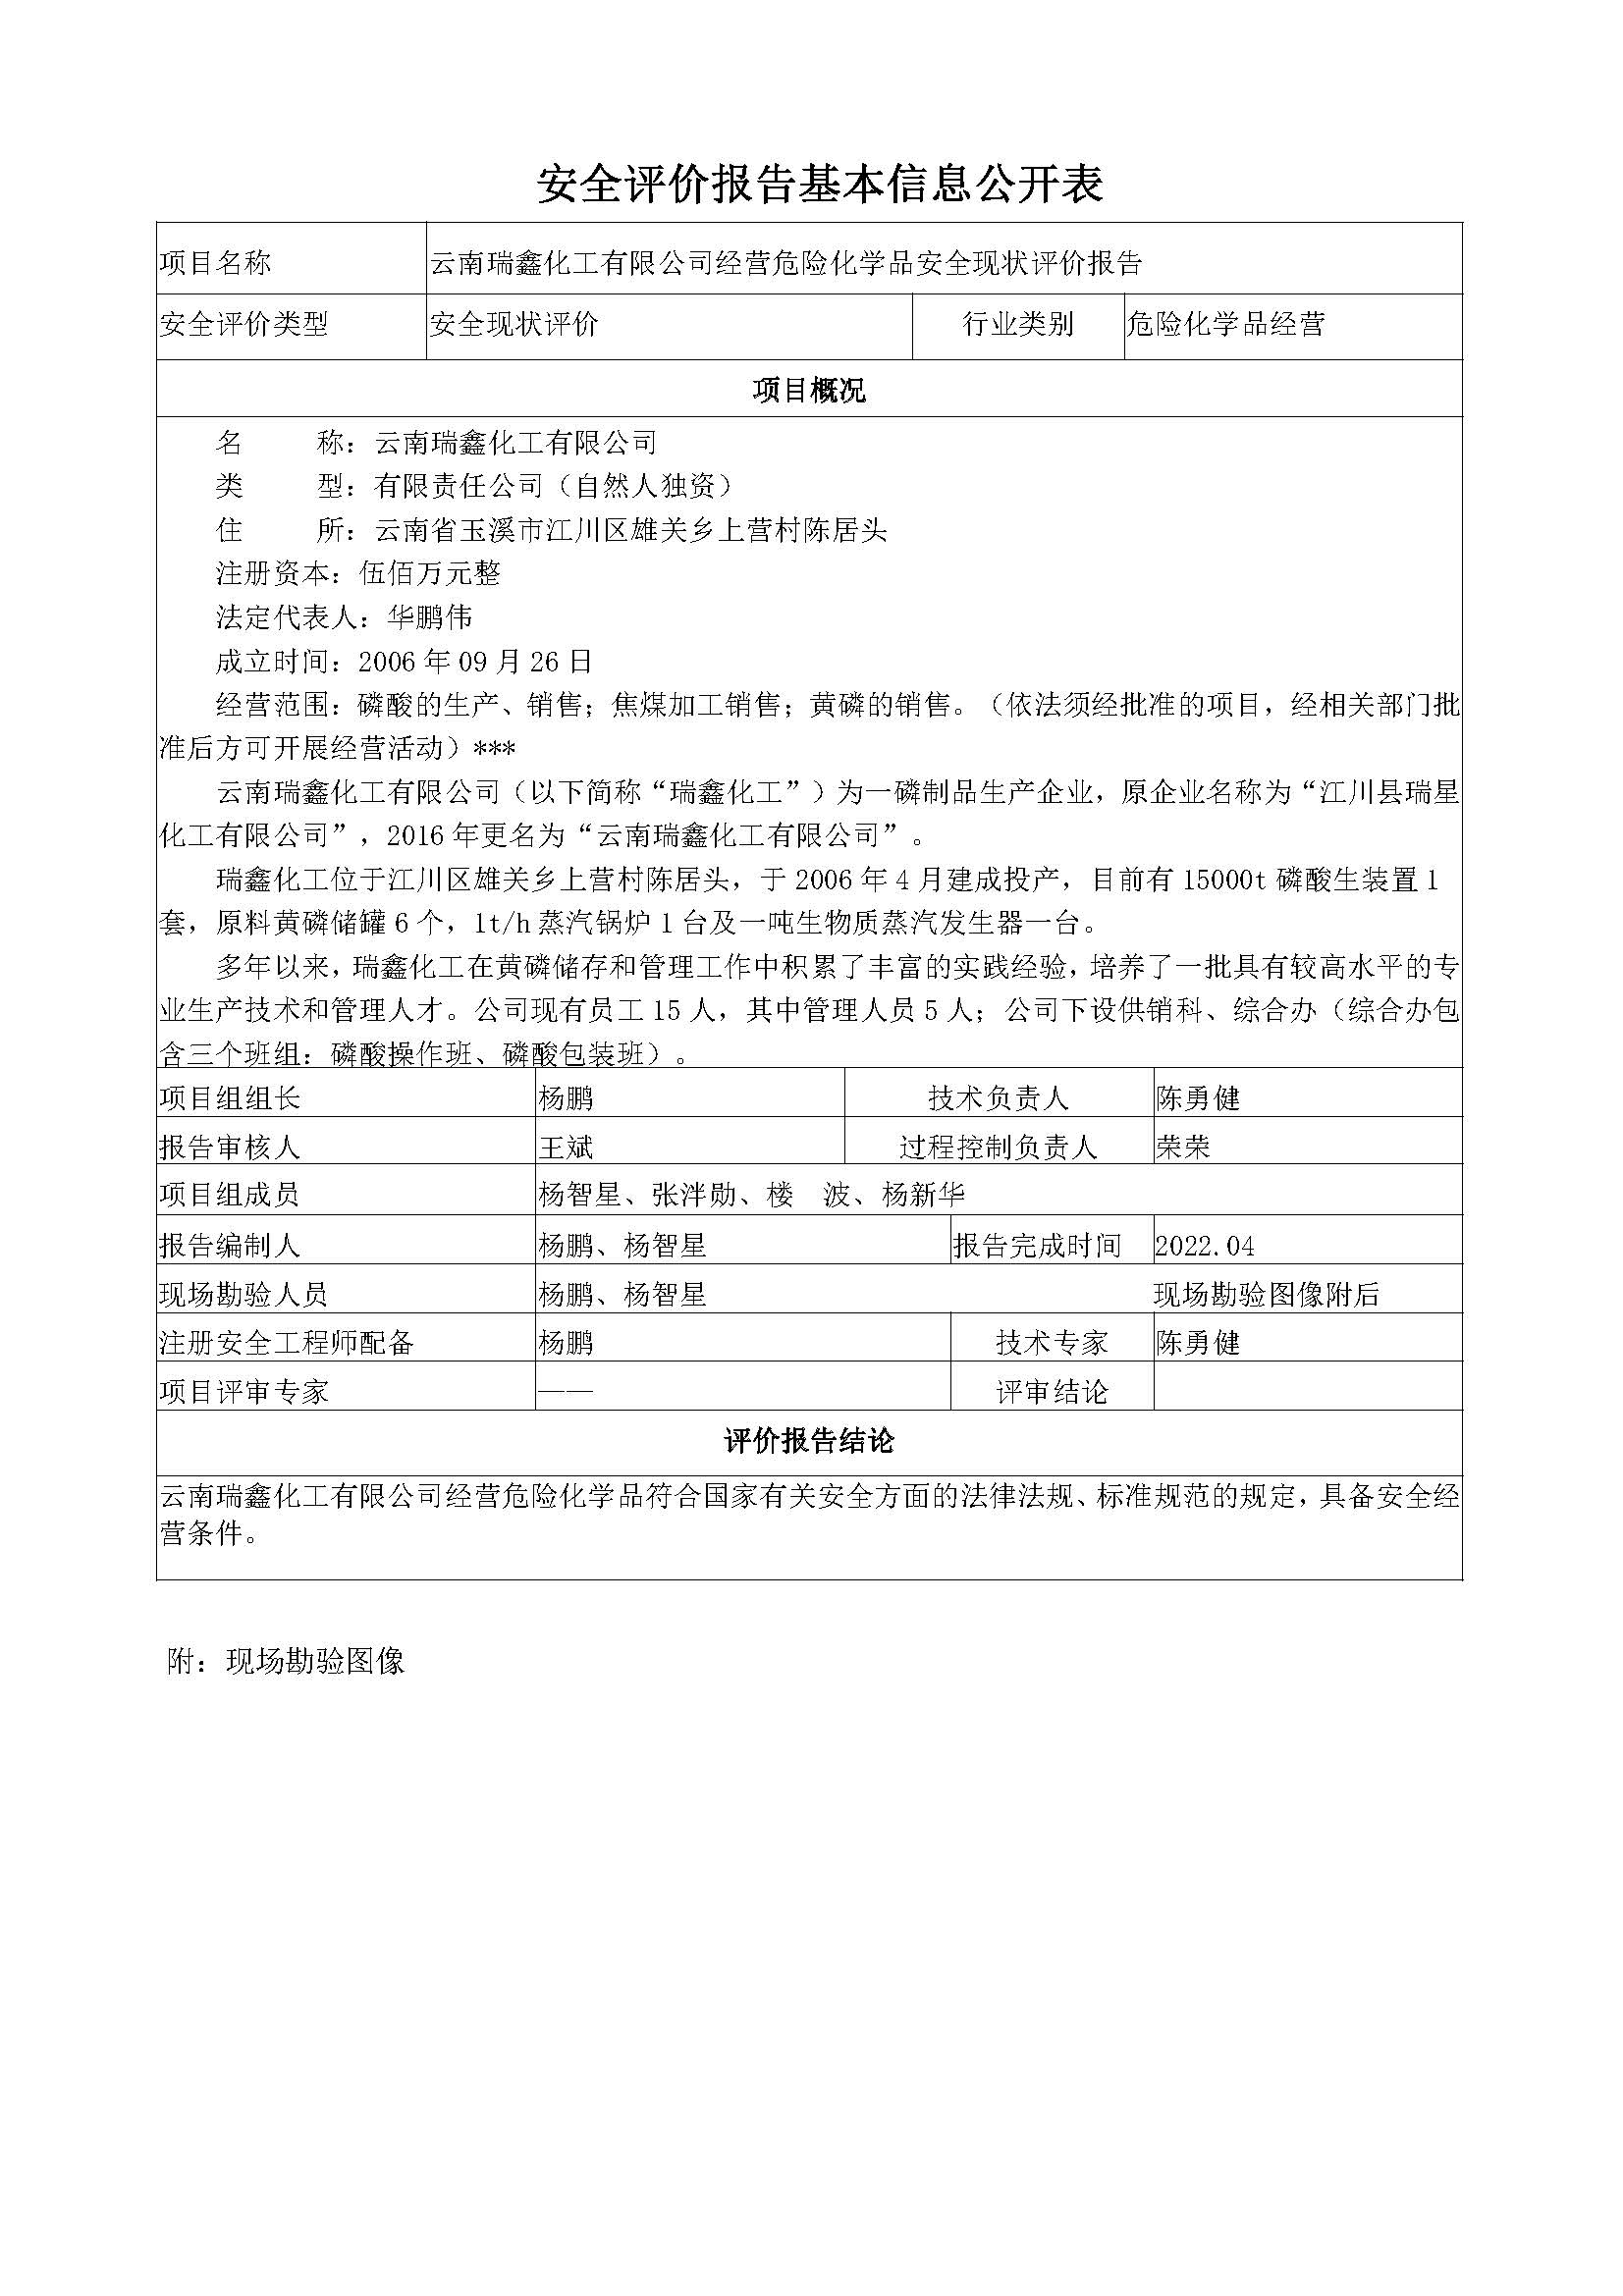 云南瑞鑫化工有限公司磷酸生产装置安全现状评价报告基本信息公开表